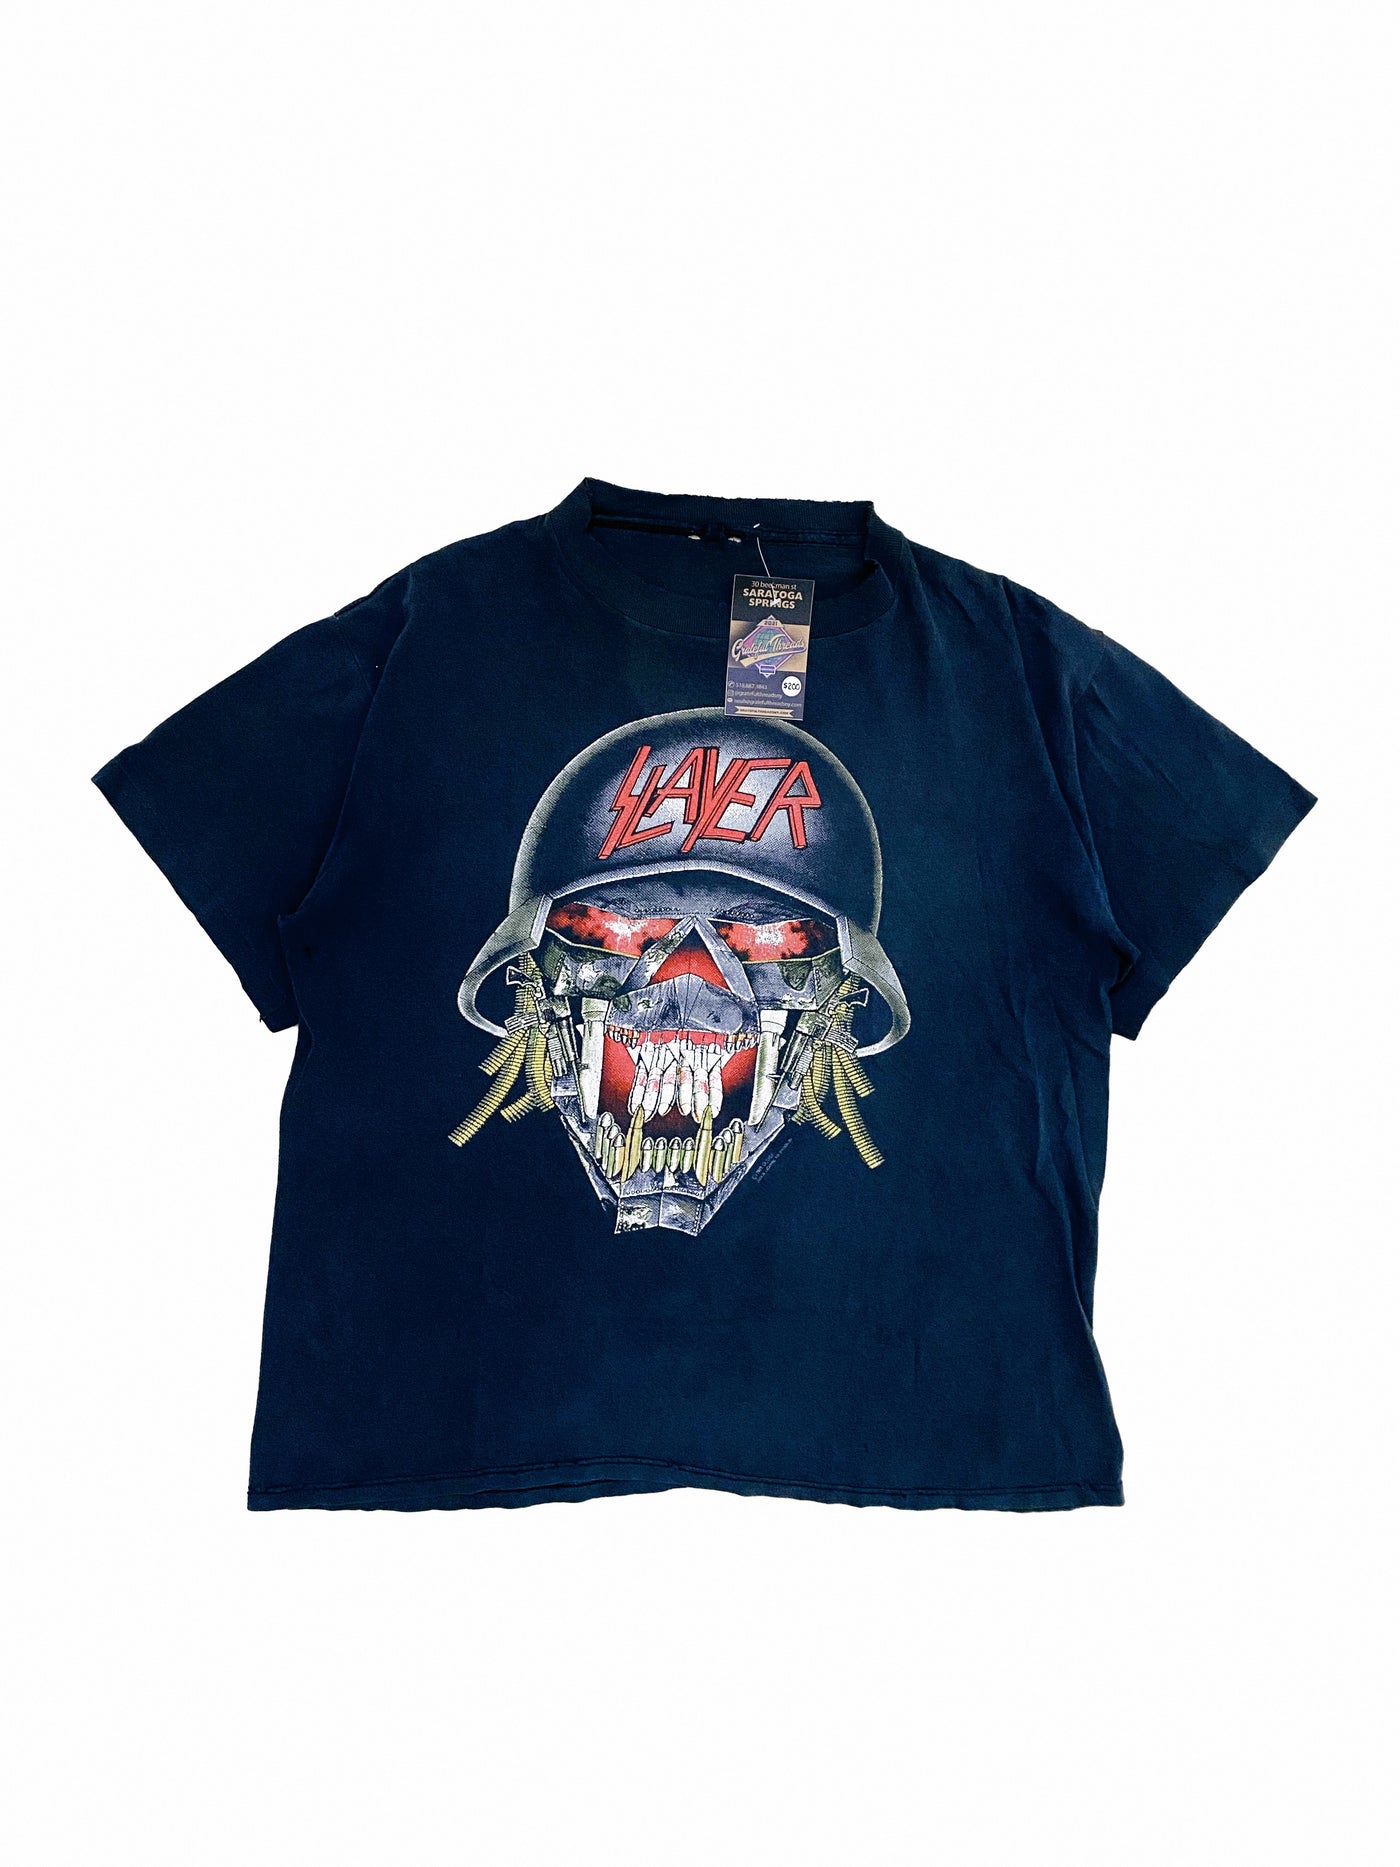 Vintage 1991 Slayer Summer Campaign T-Shirt